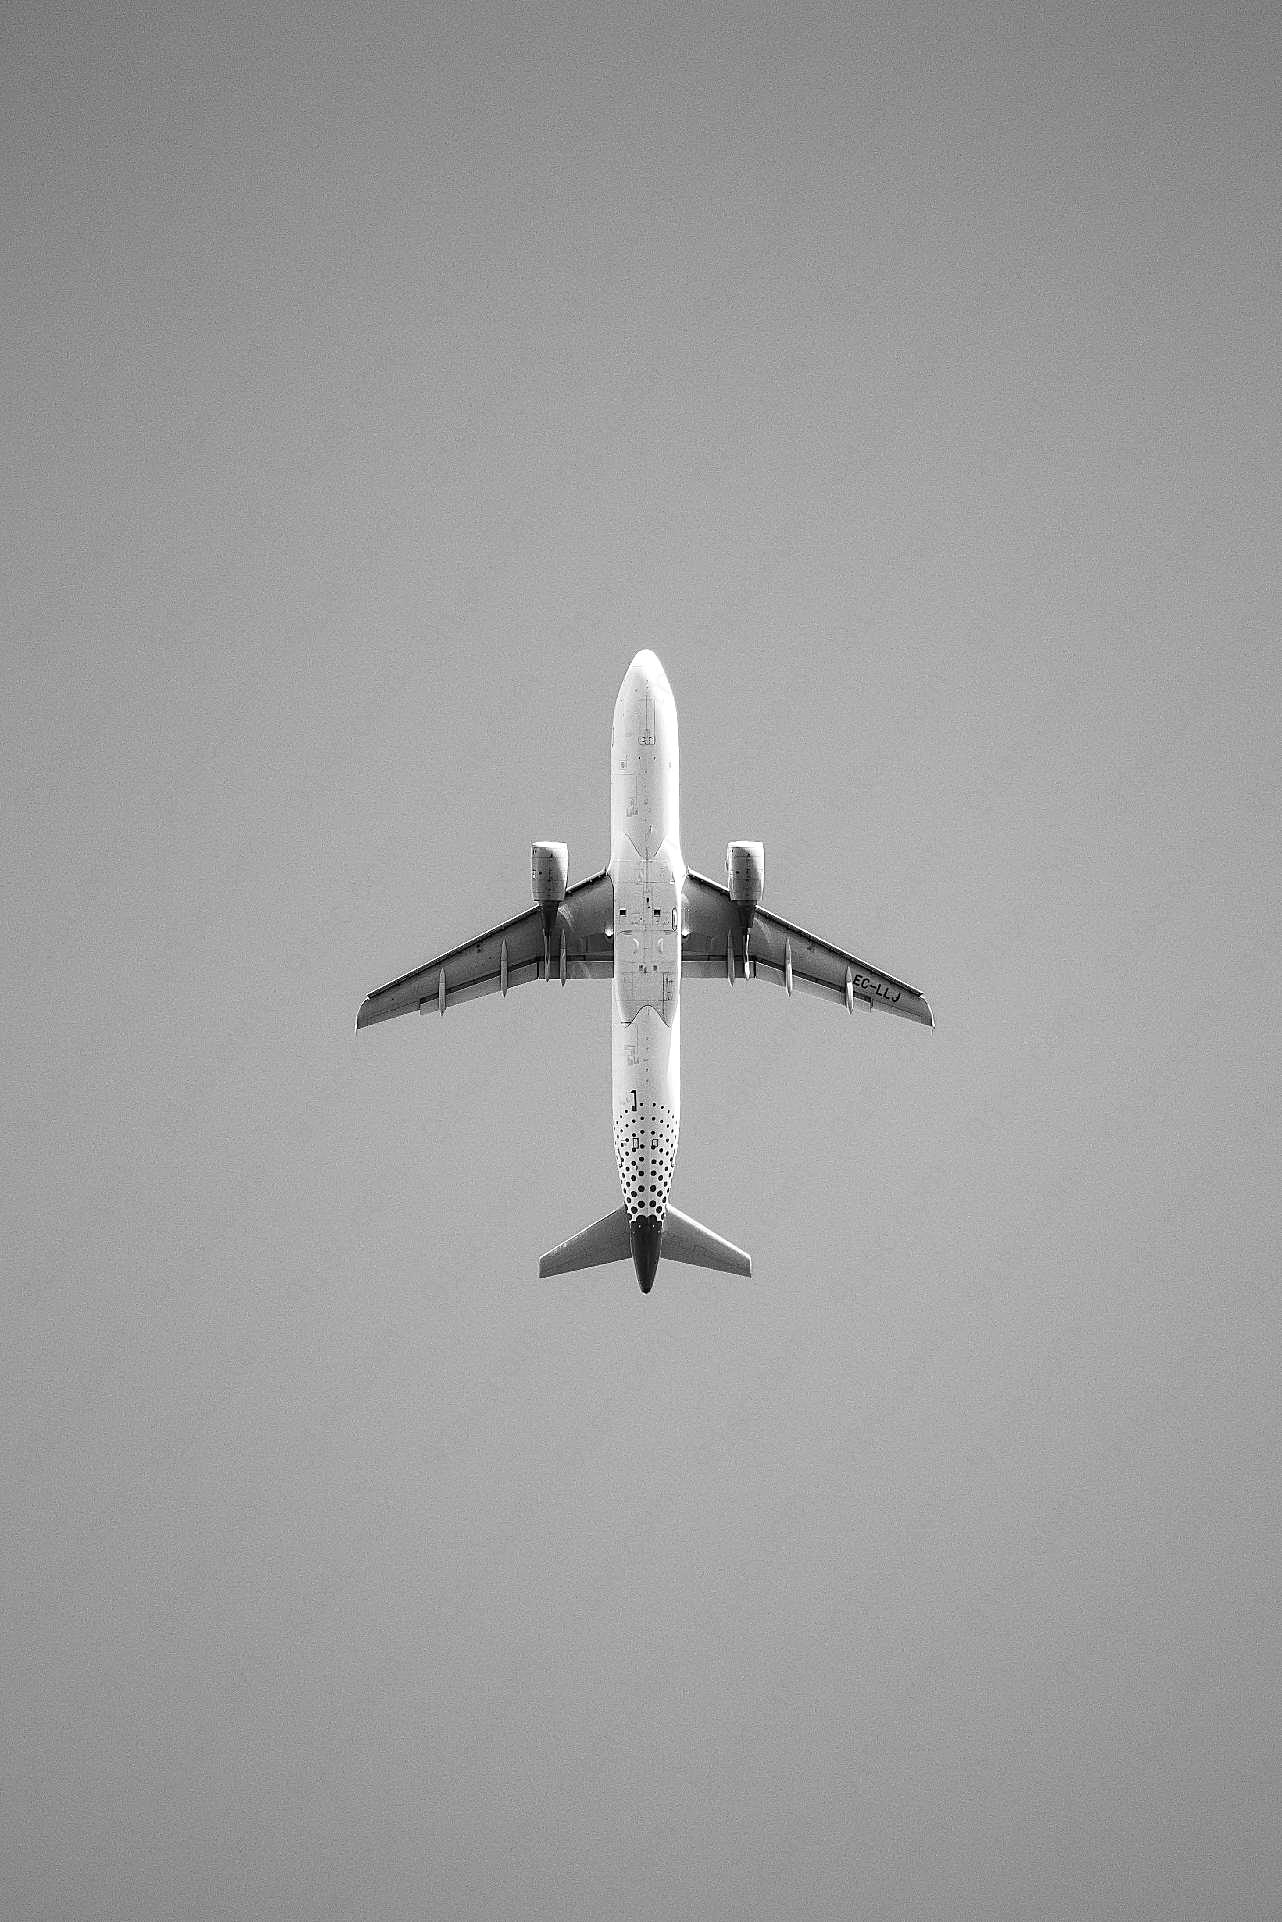 黑白飞机高清图片交通工具